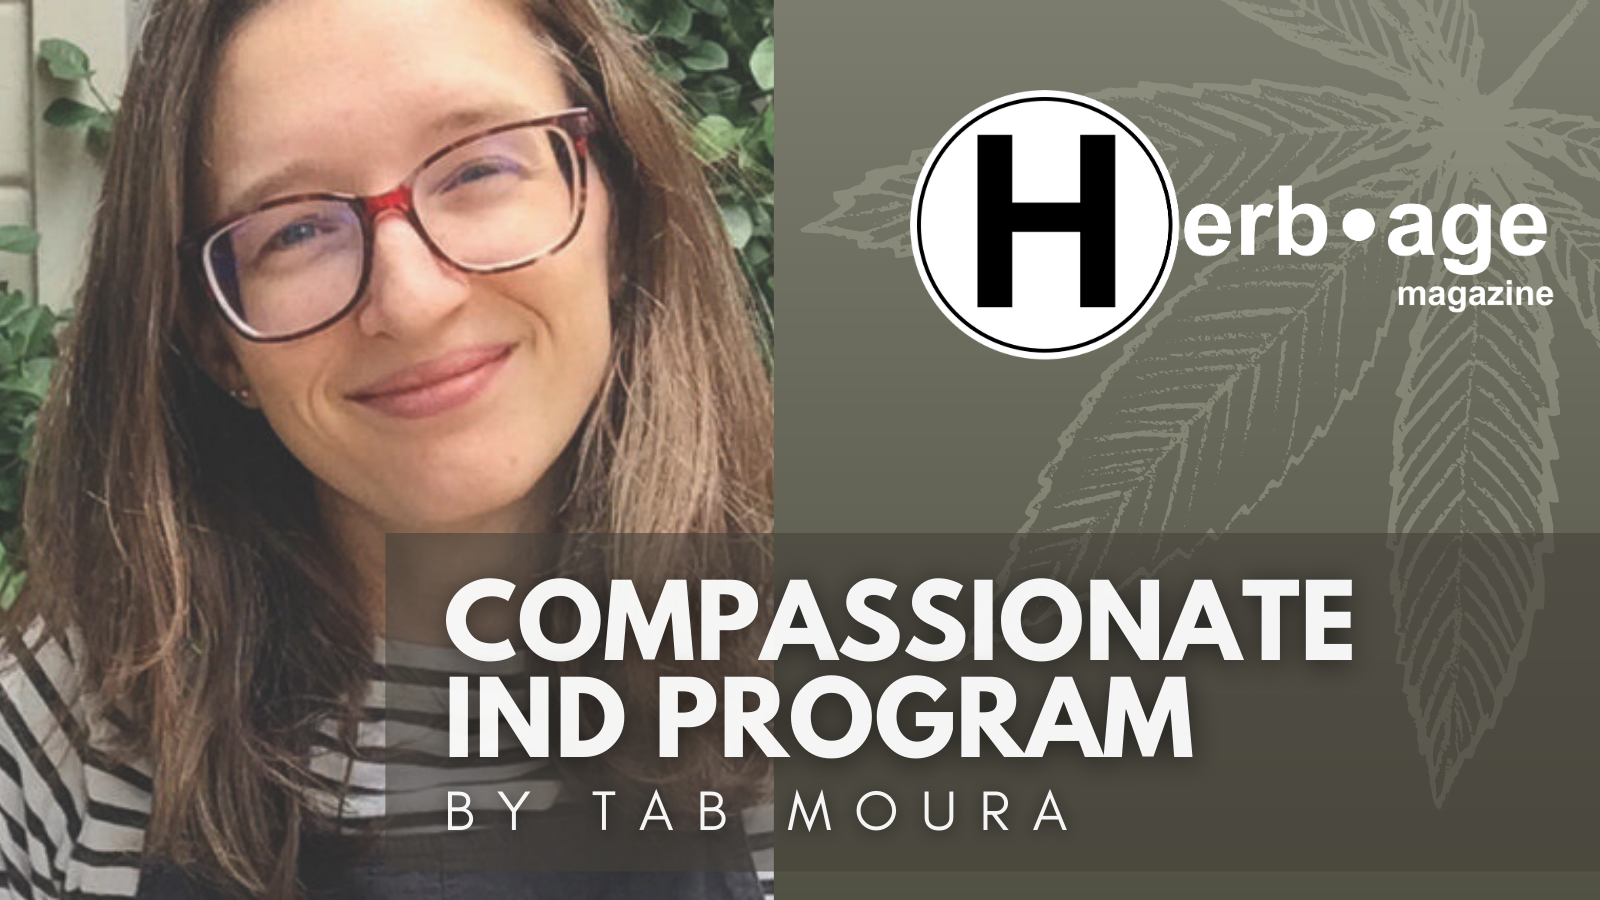 Compassionate IND Program